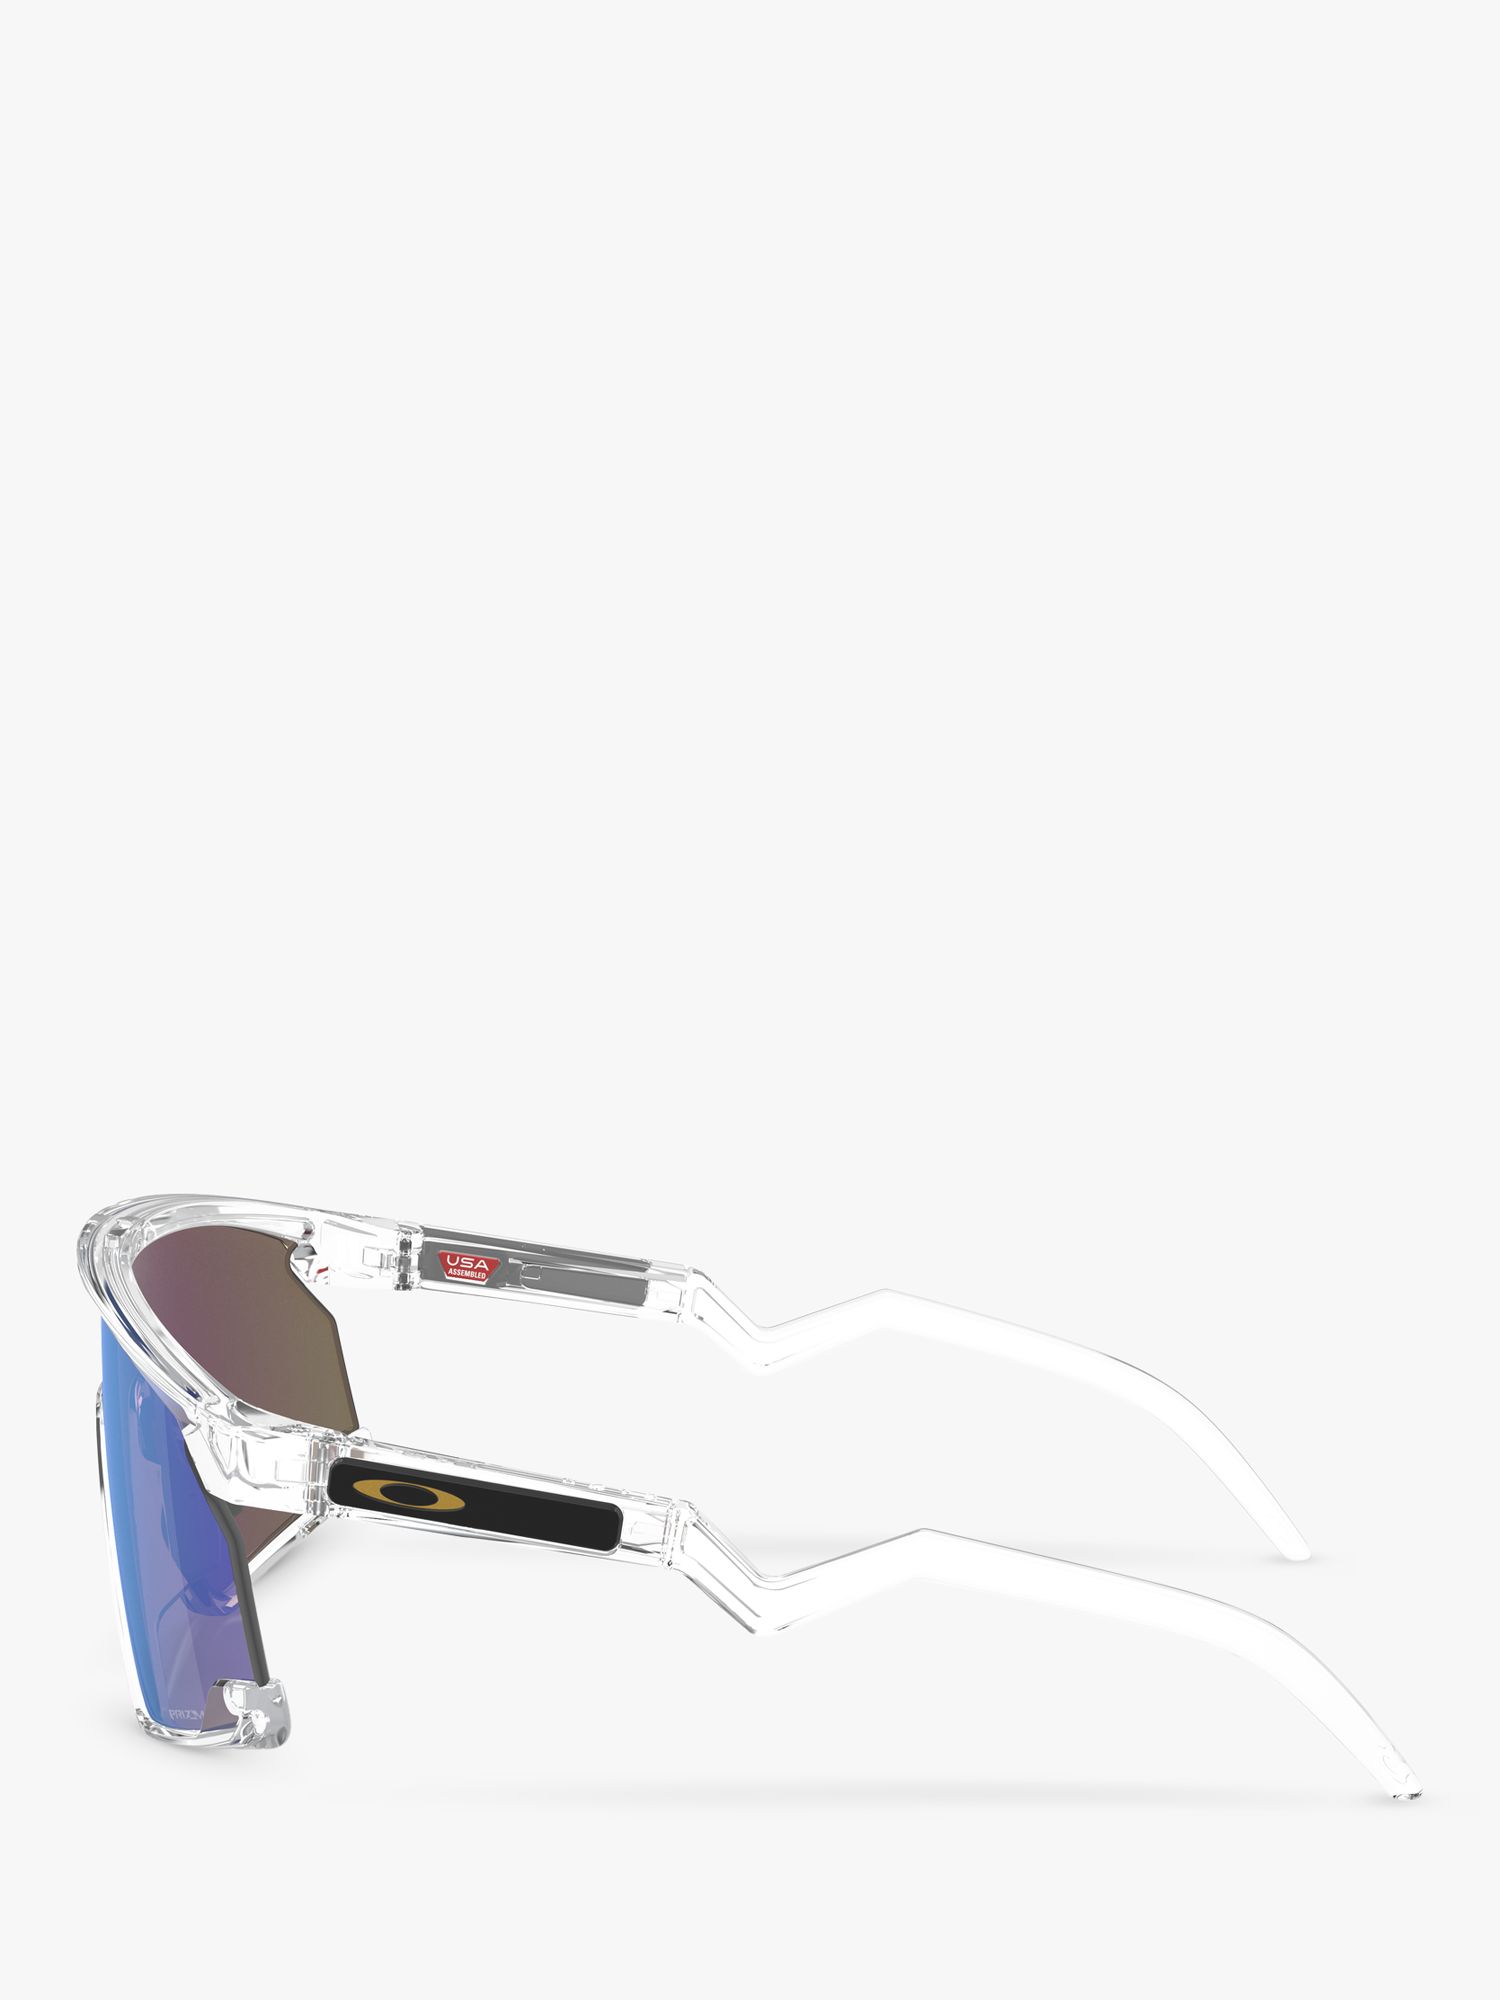 Oakley OO9280 Unisex Wrap Sunglasses, Clear/Mirror Blue